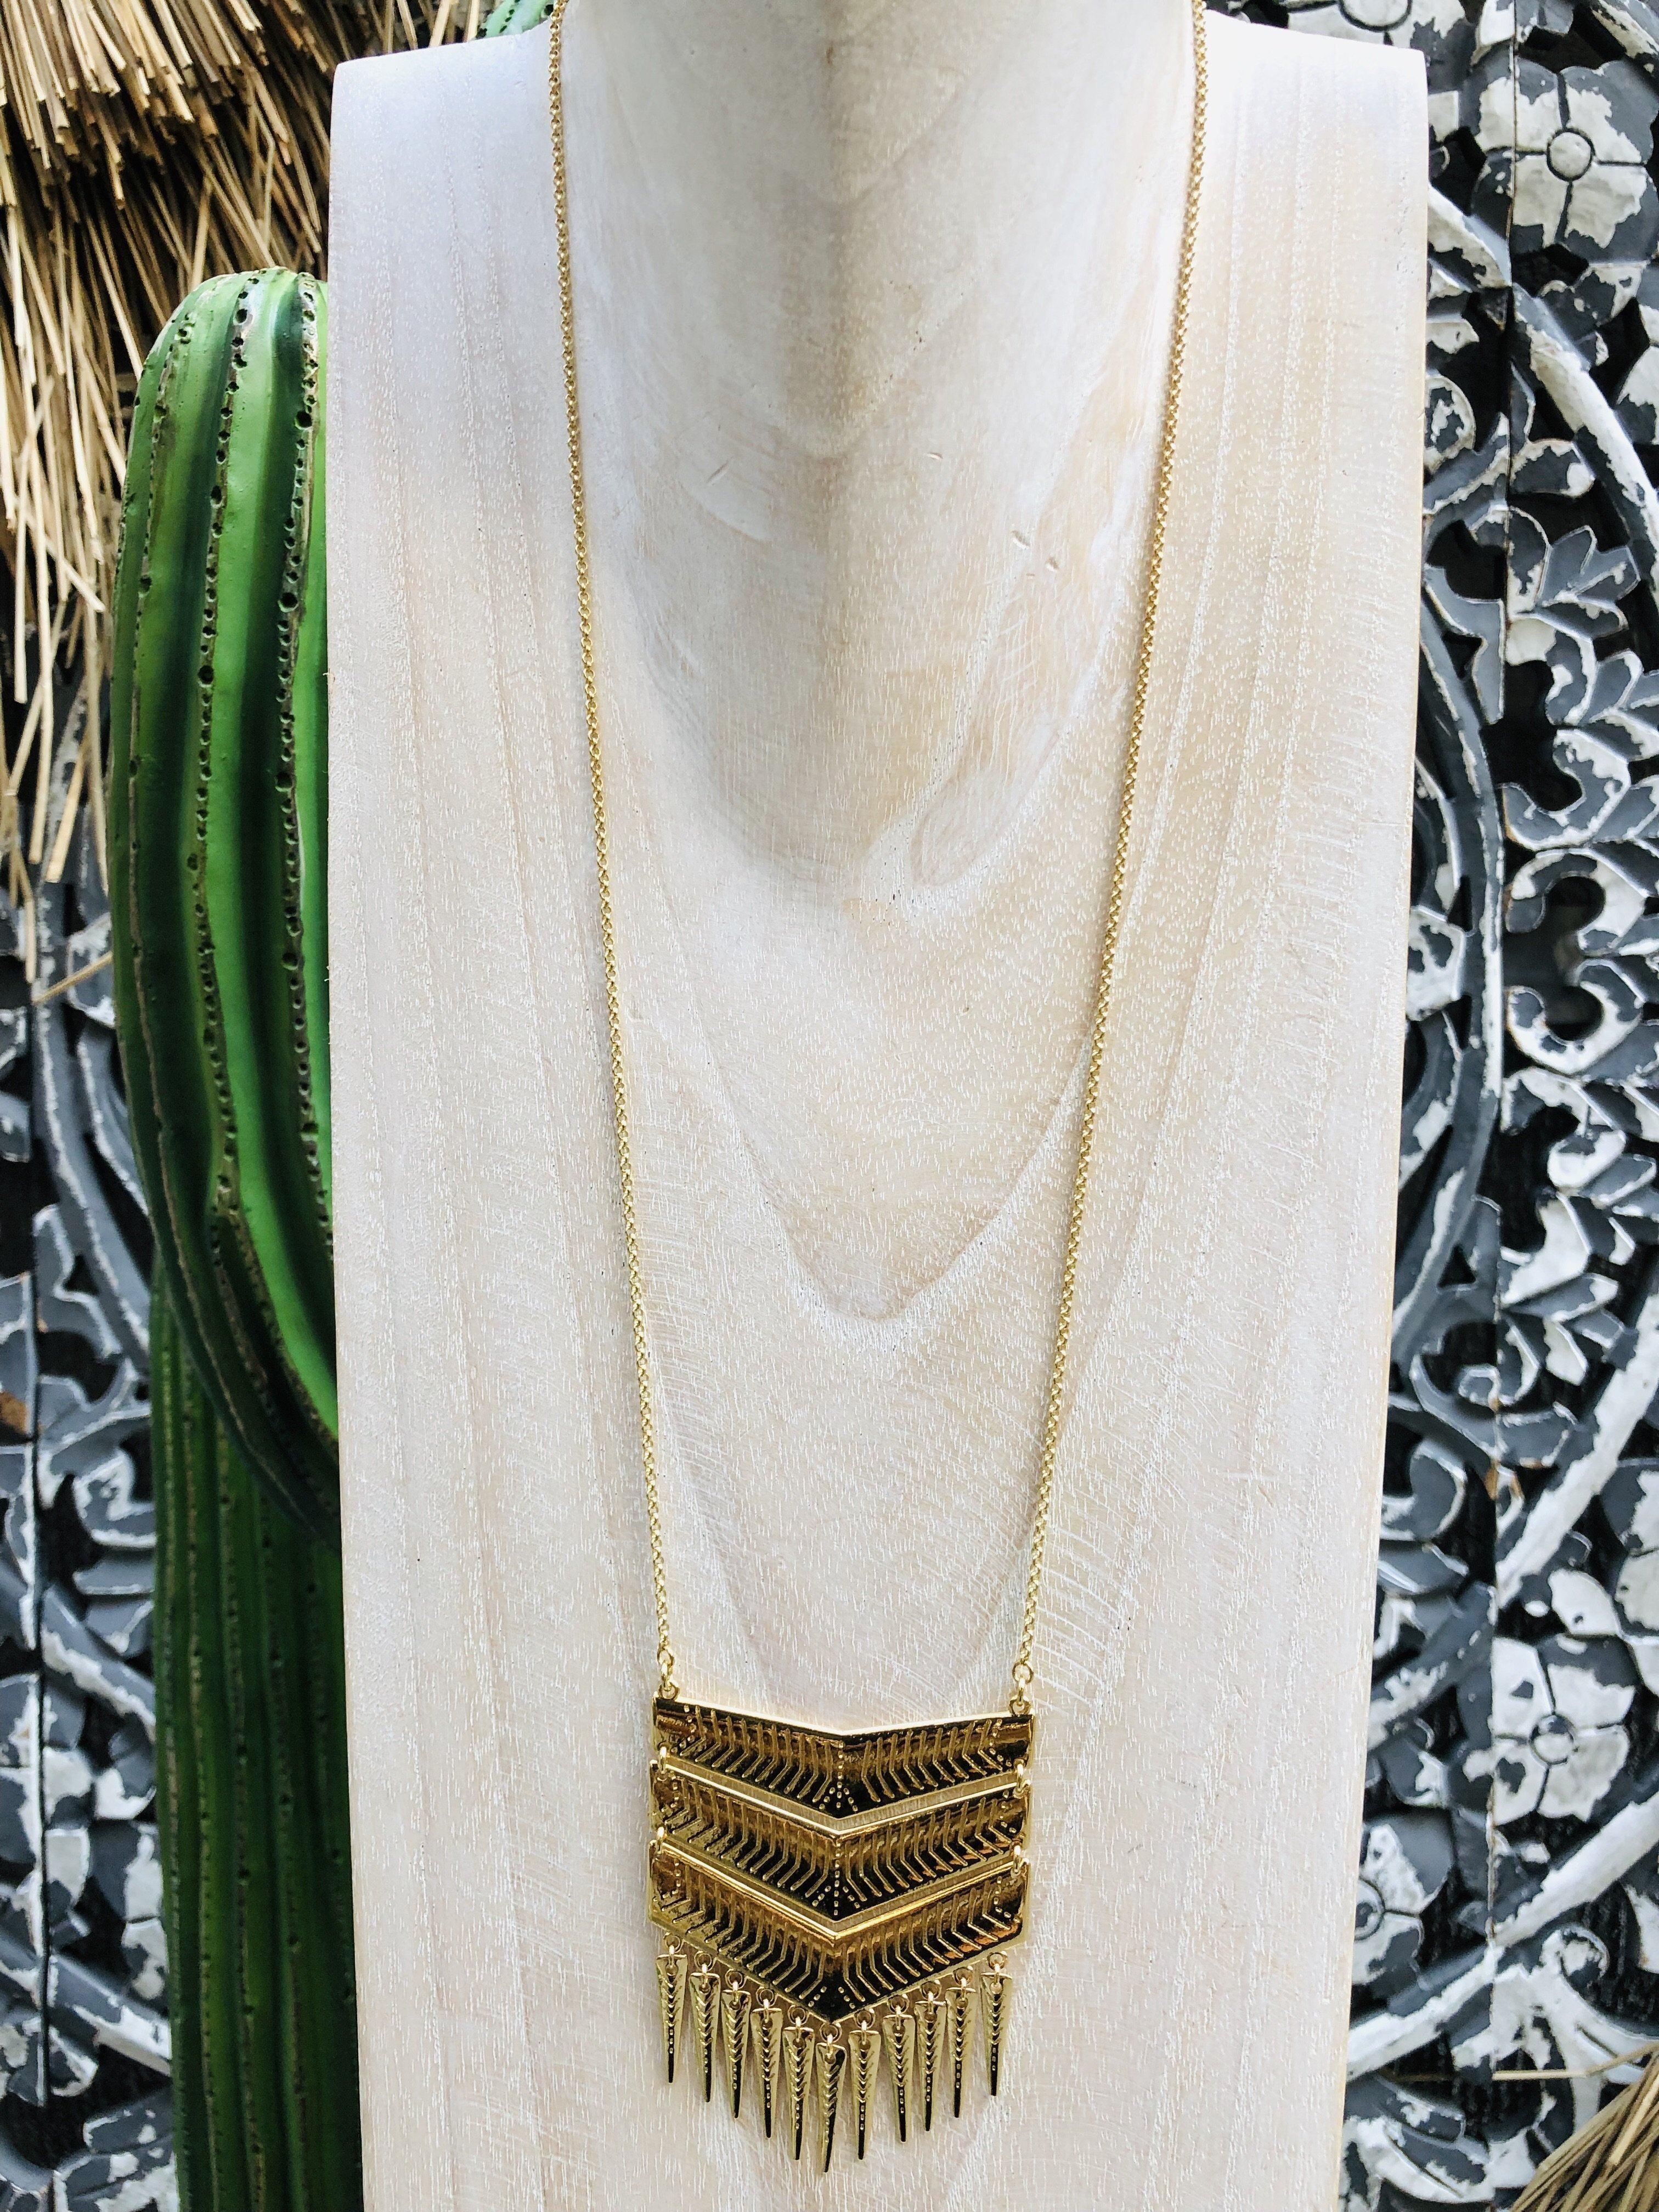 Shabada necklace